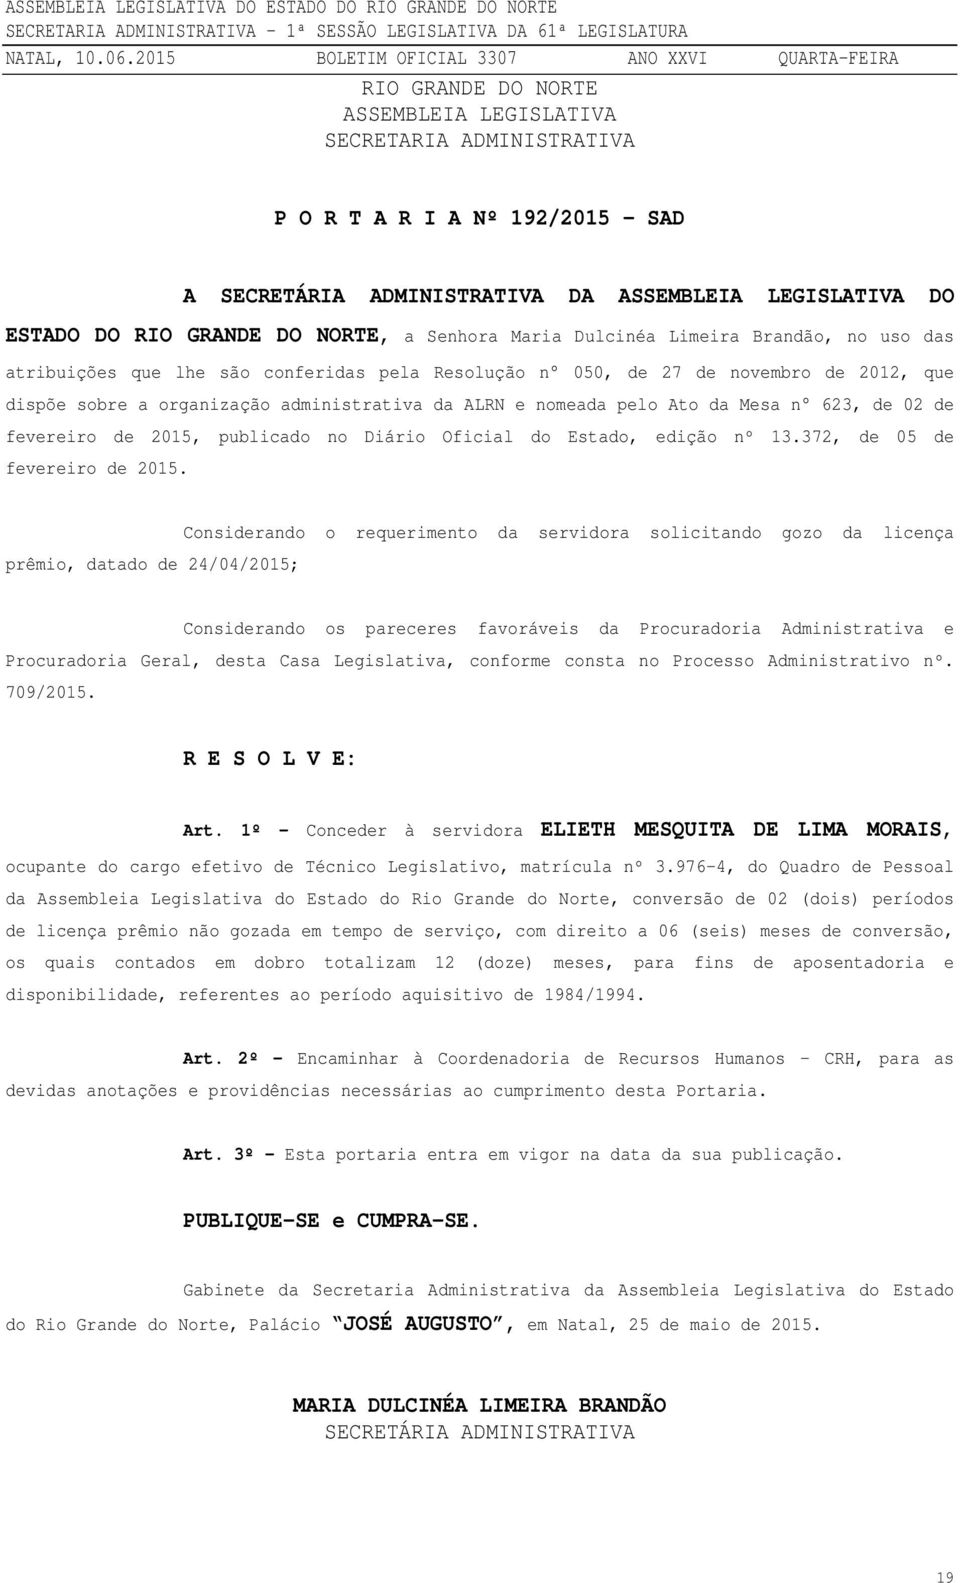 da Mesa n 623, de 02 de fevereiro de 2015, publicado no Diário Oficial do Estado, edição nº 13.372, de 05 de fevereiro de 2015.